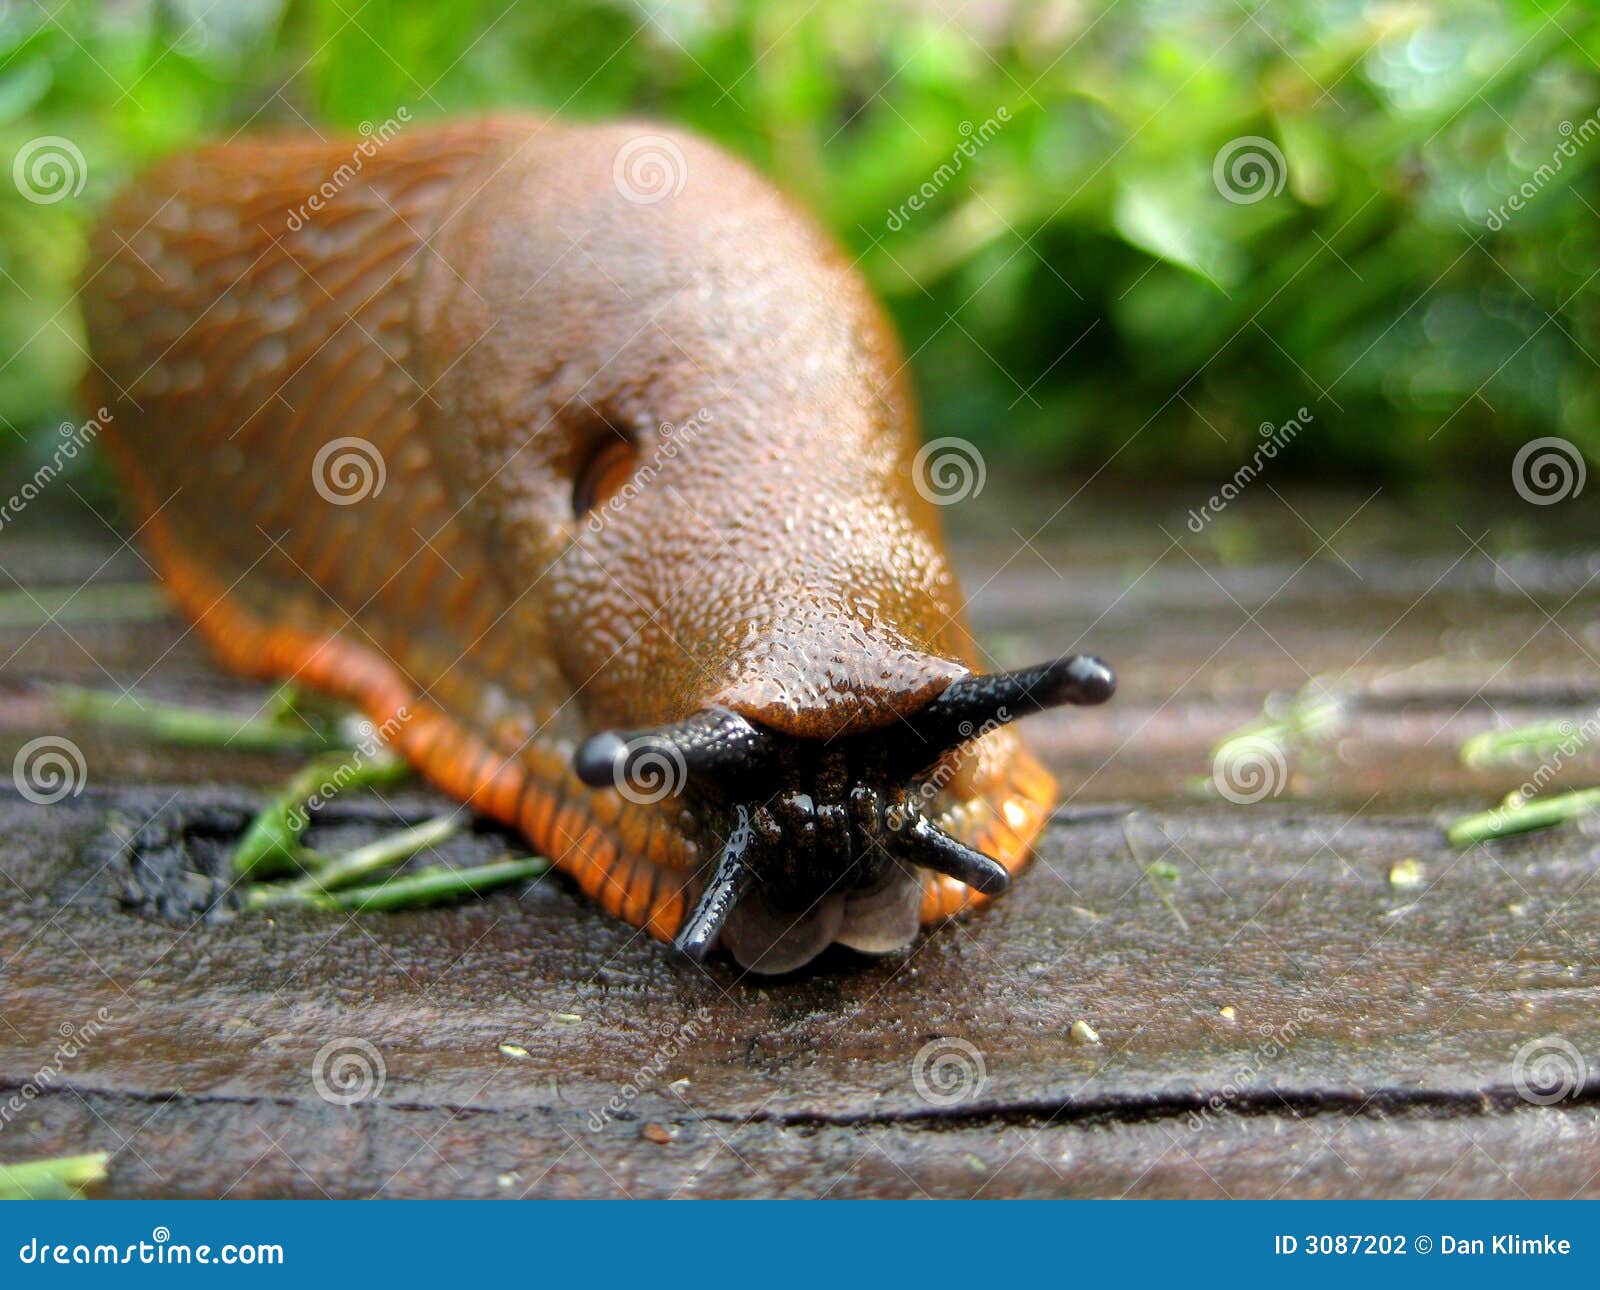 macro of a slug